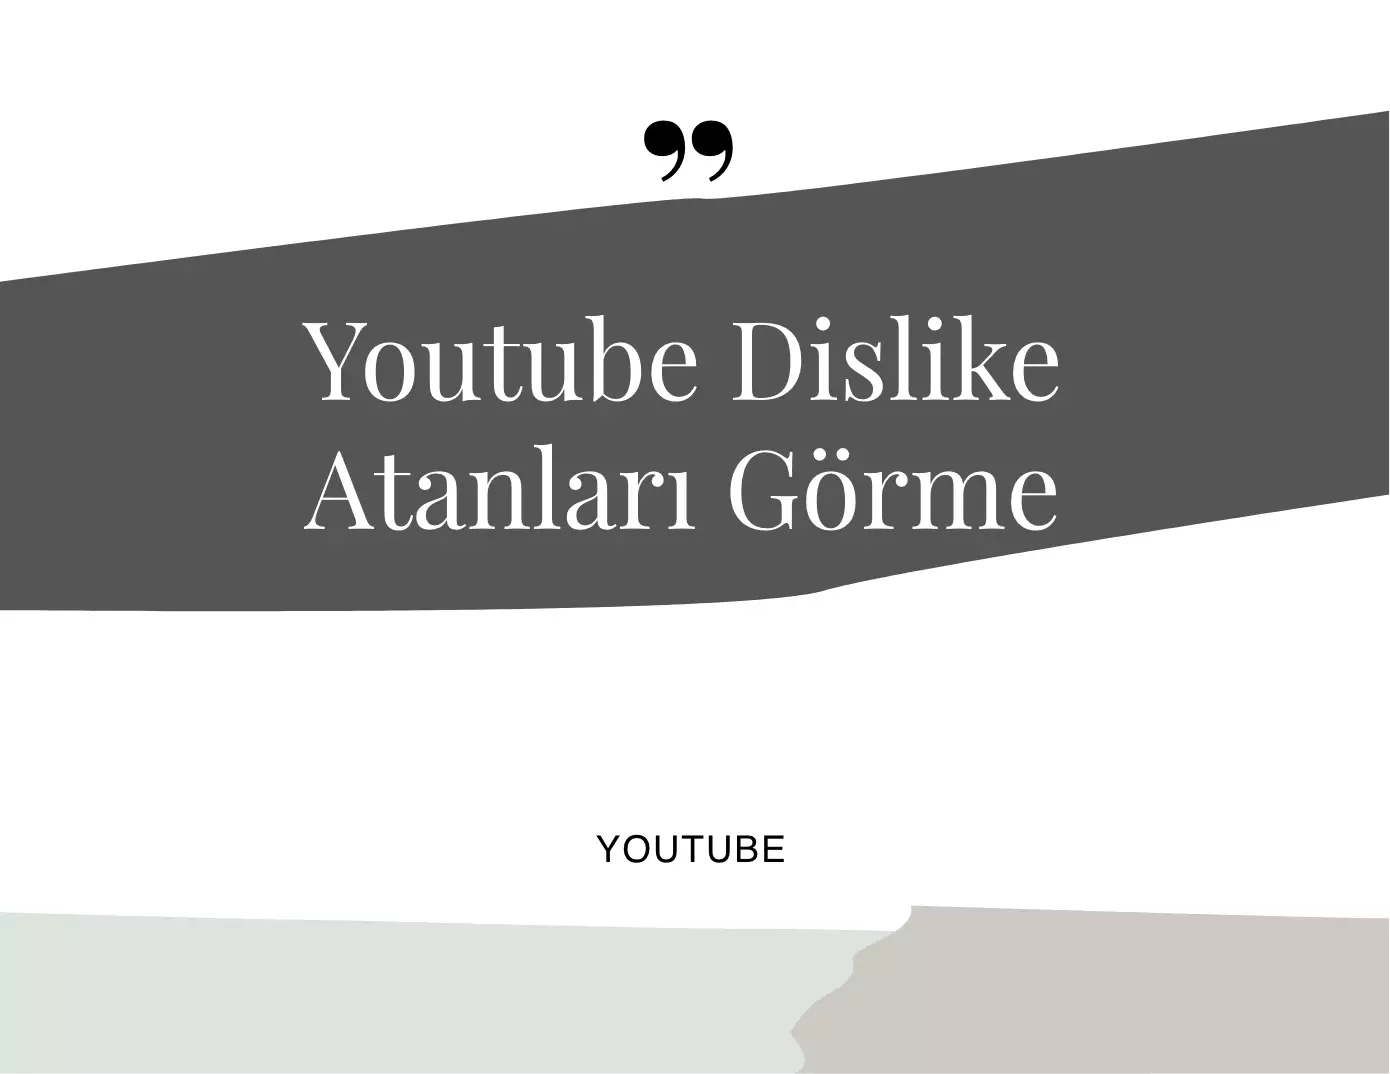 Youtube Dislike Atanları Görme